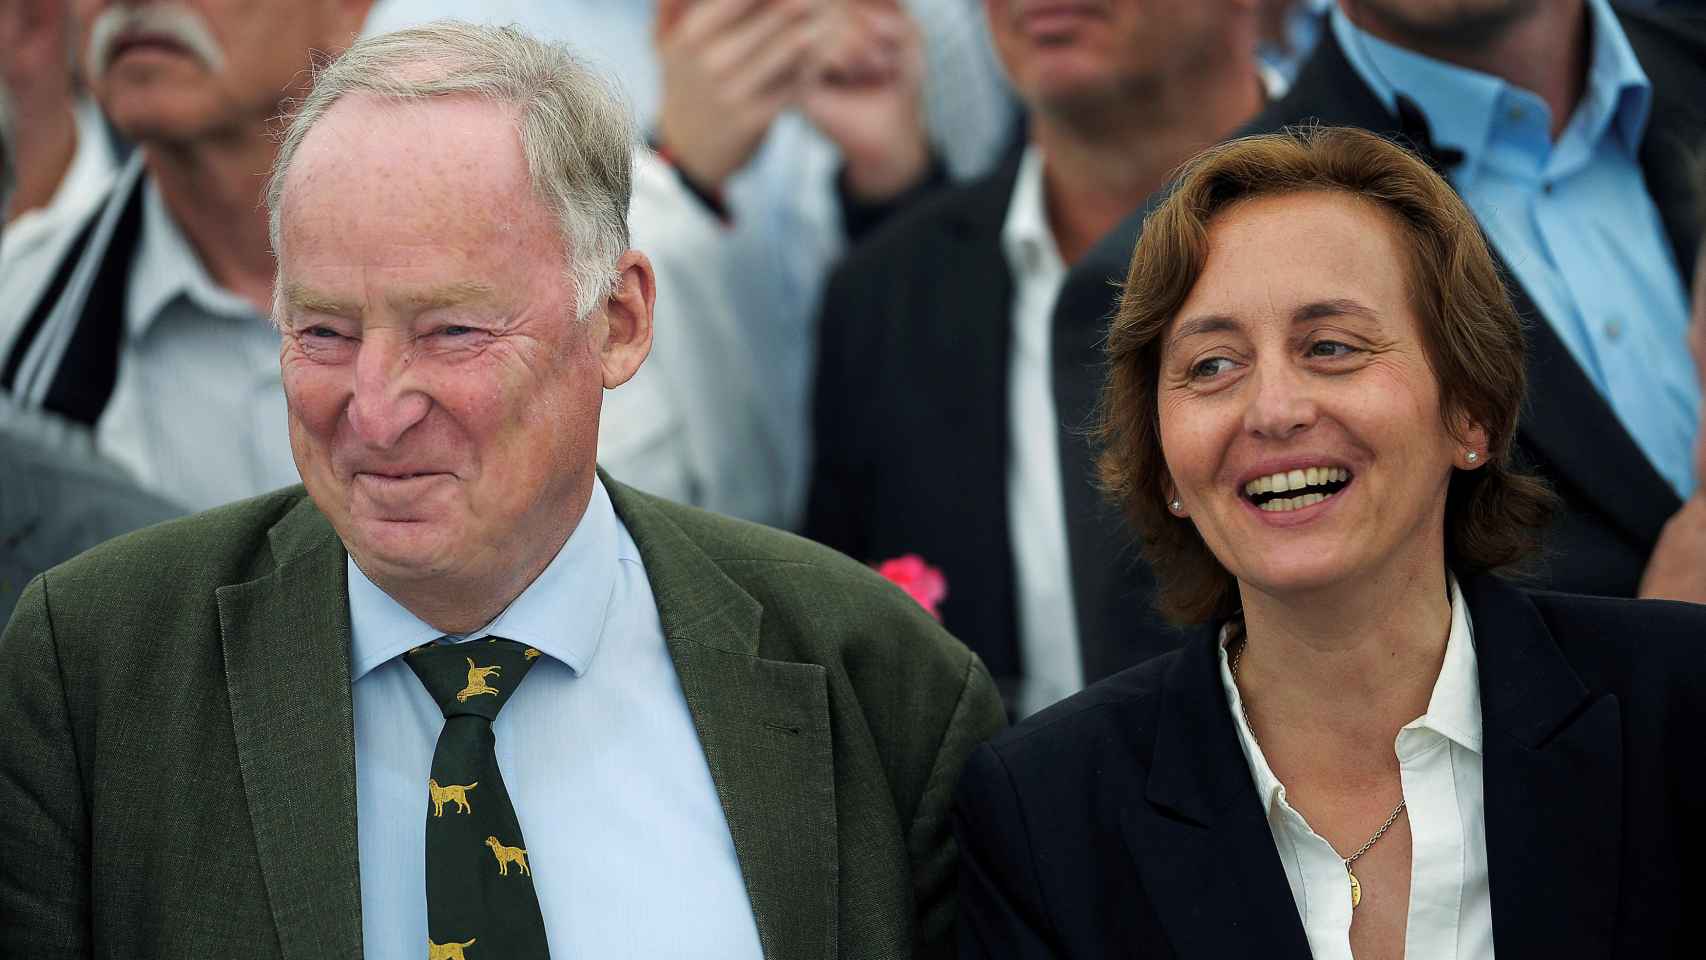 Alexander Gauland y Beatrix von Storch de Afd sonríen antes del resultado de la votación.